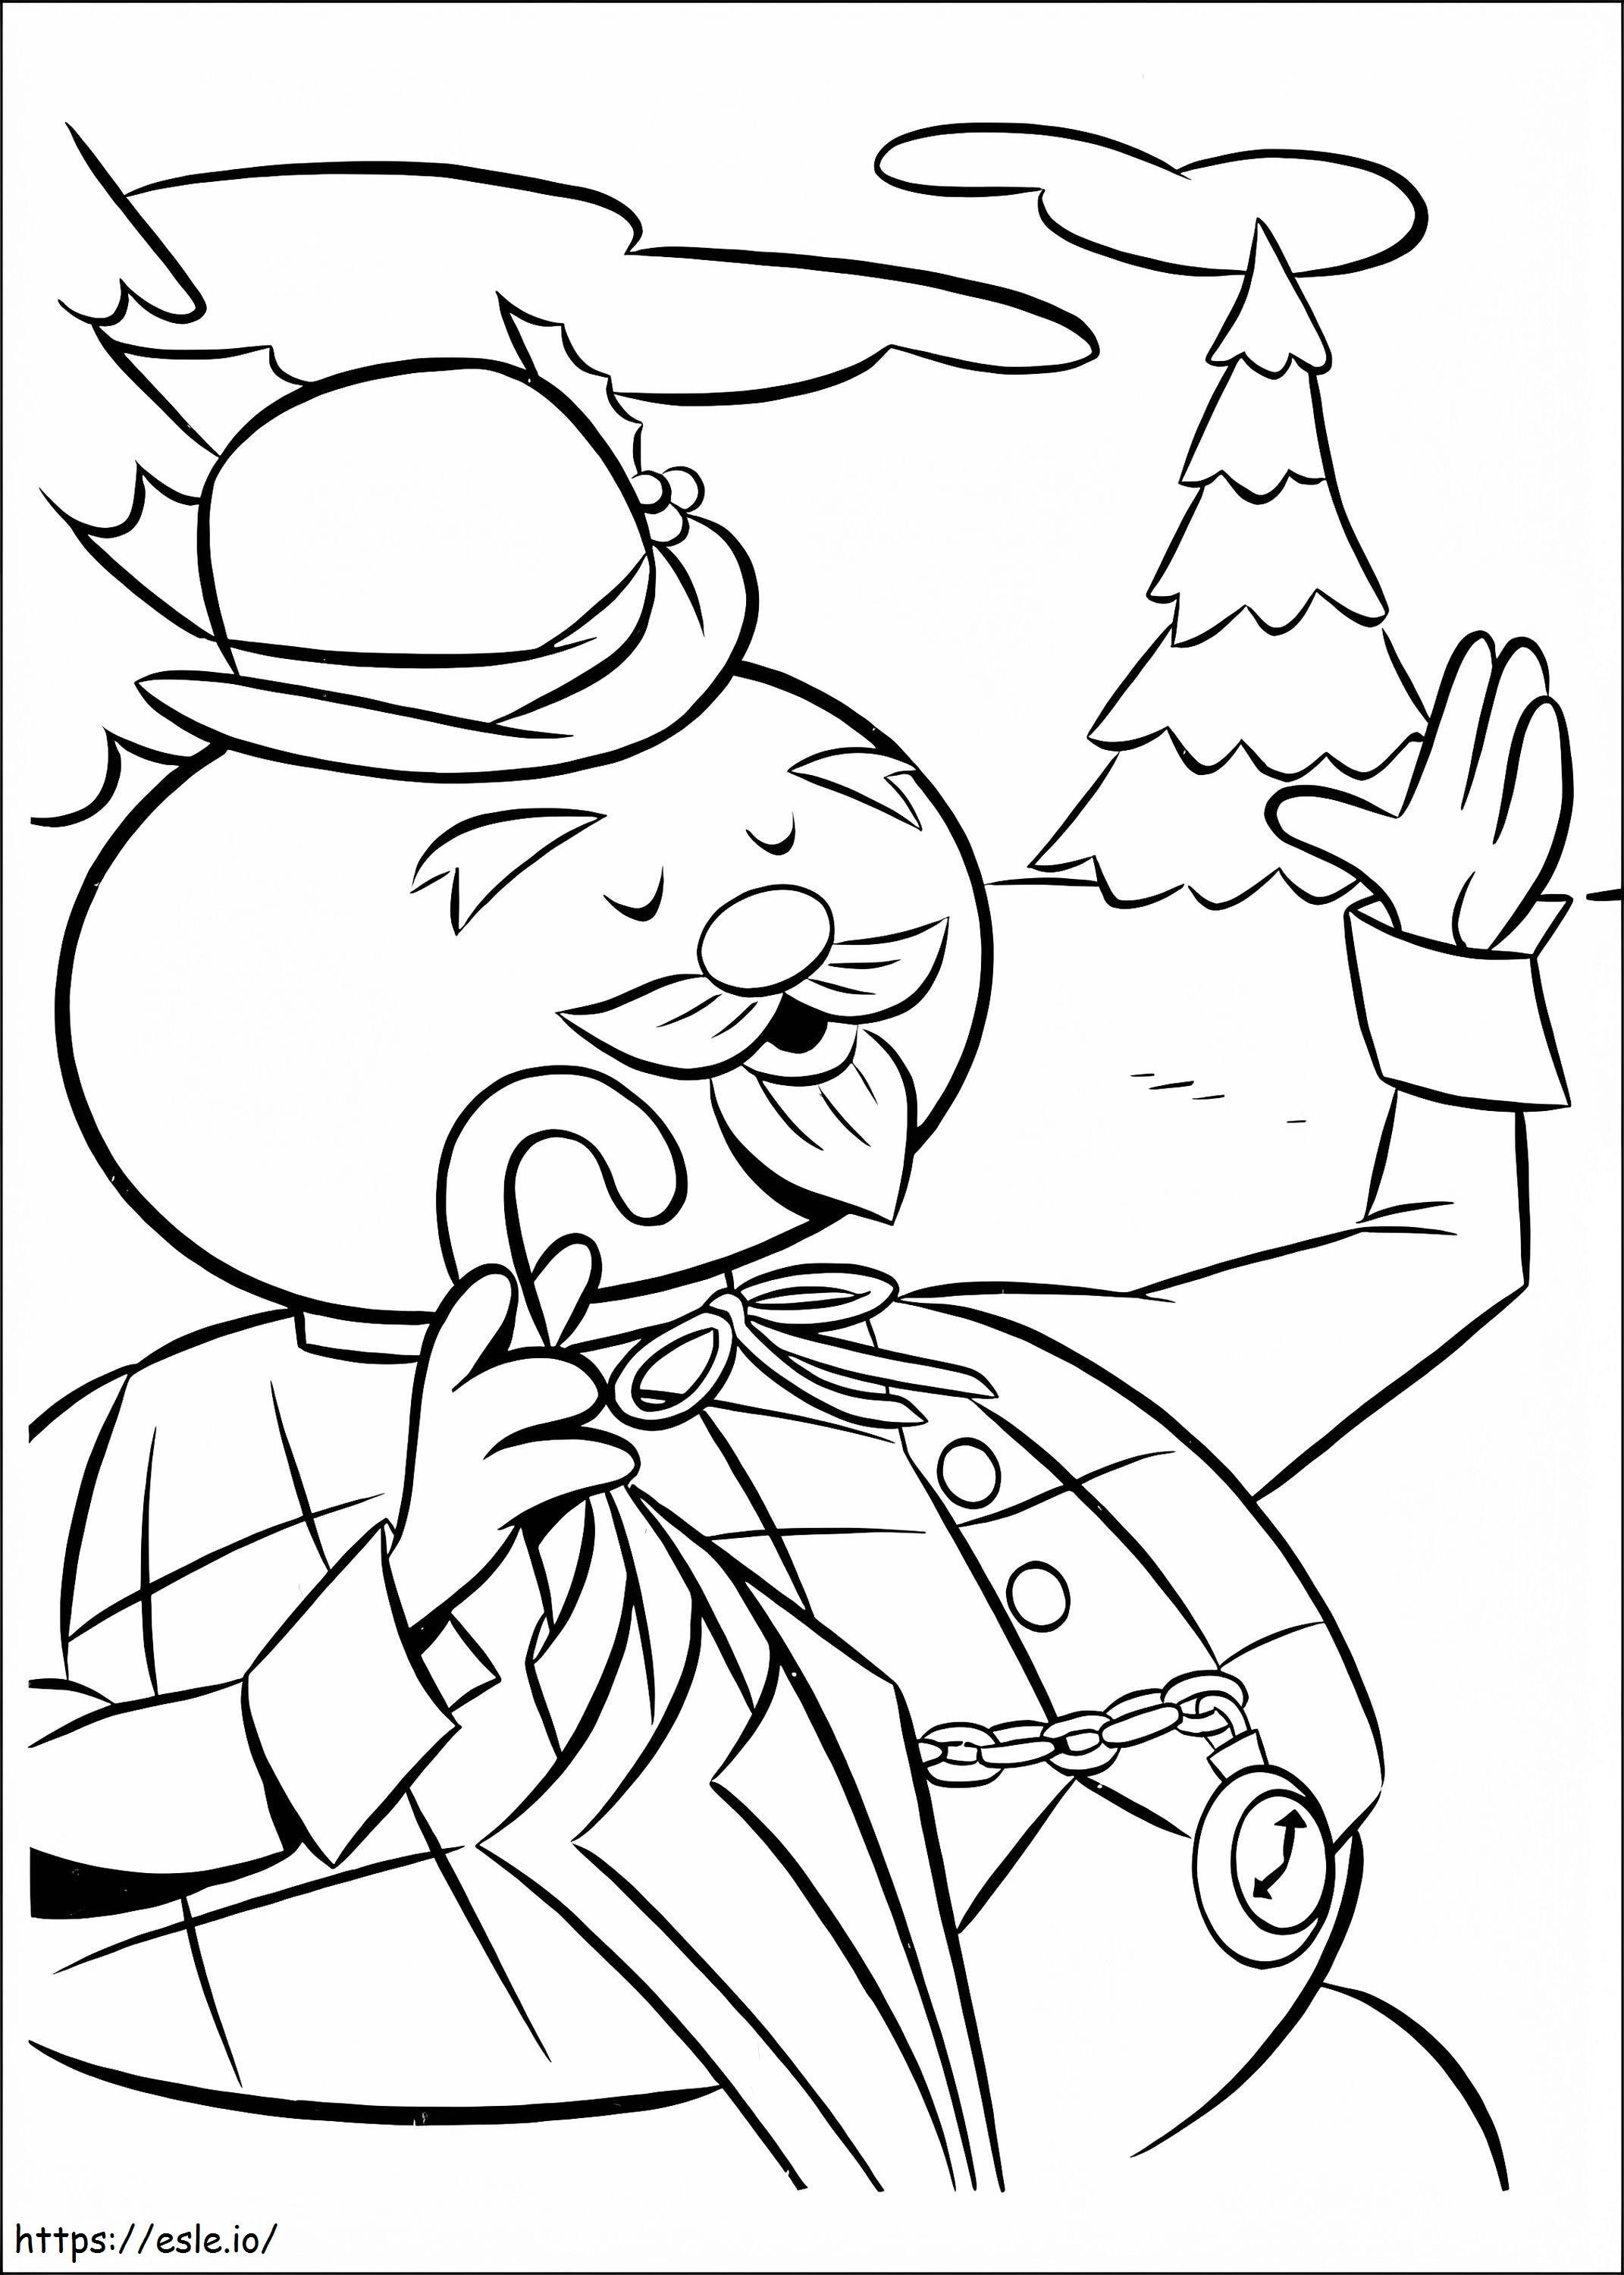 Coloriage Sam le bonhomme de neige de Rudolph à imprimer dessin